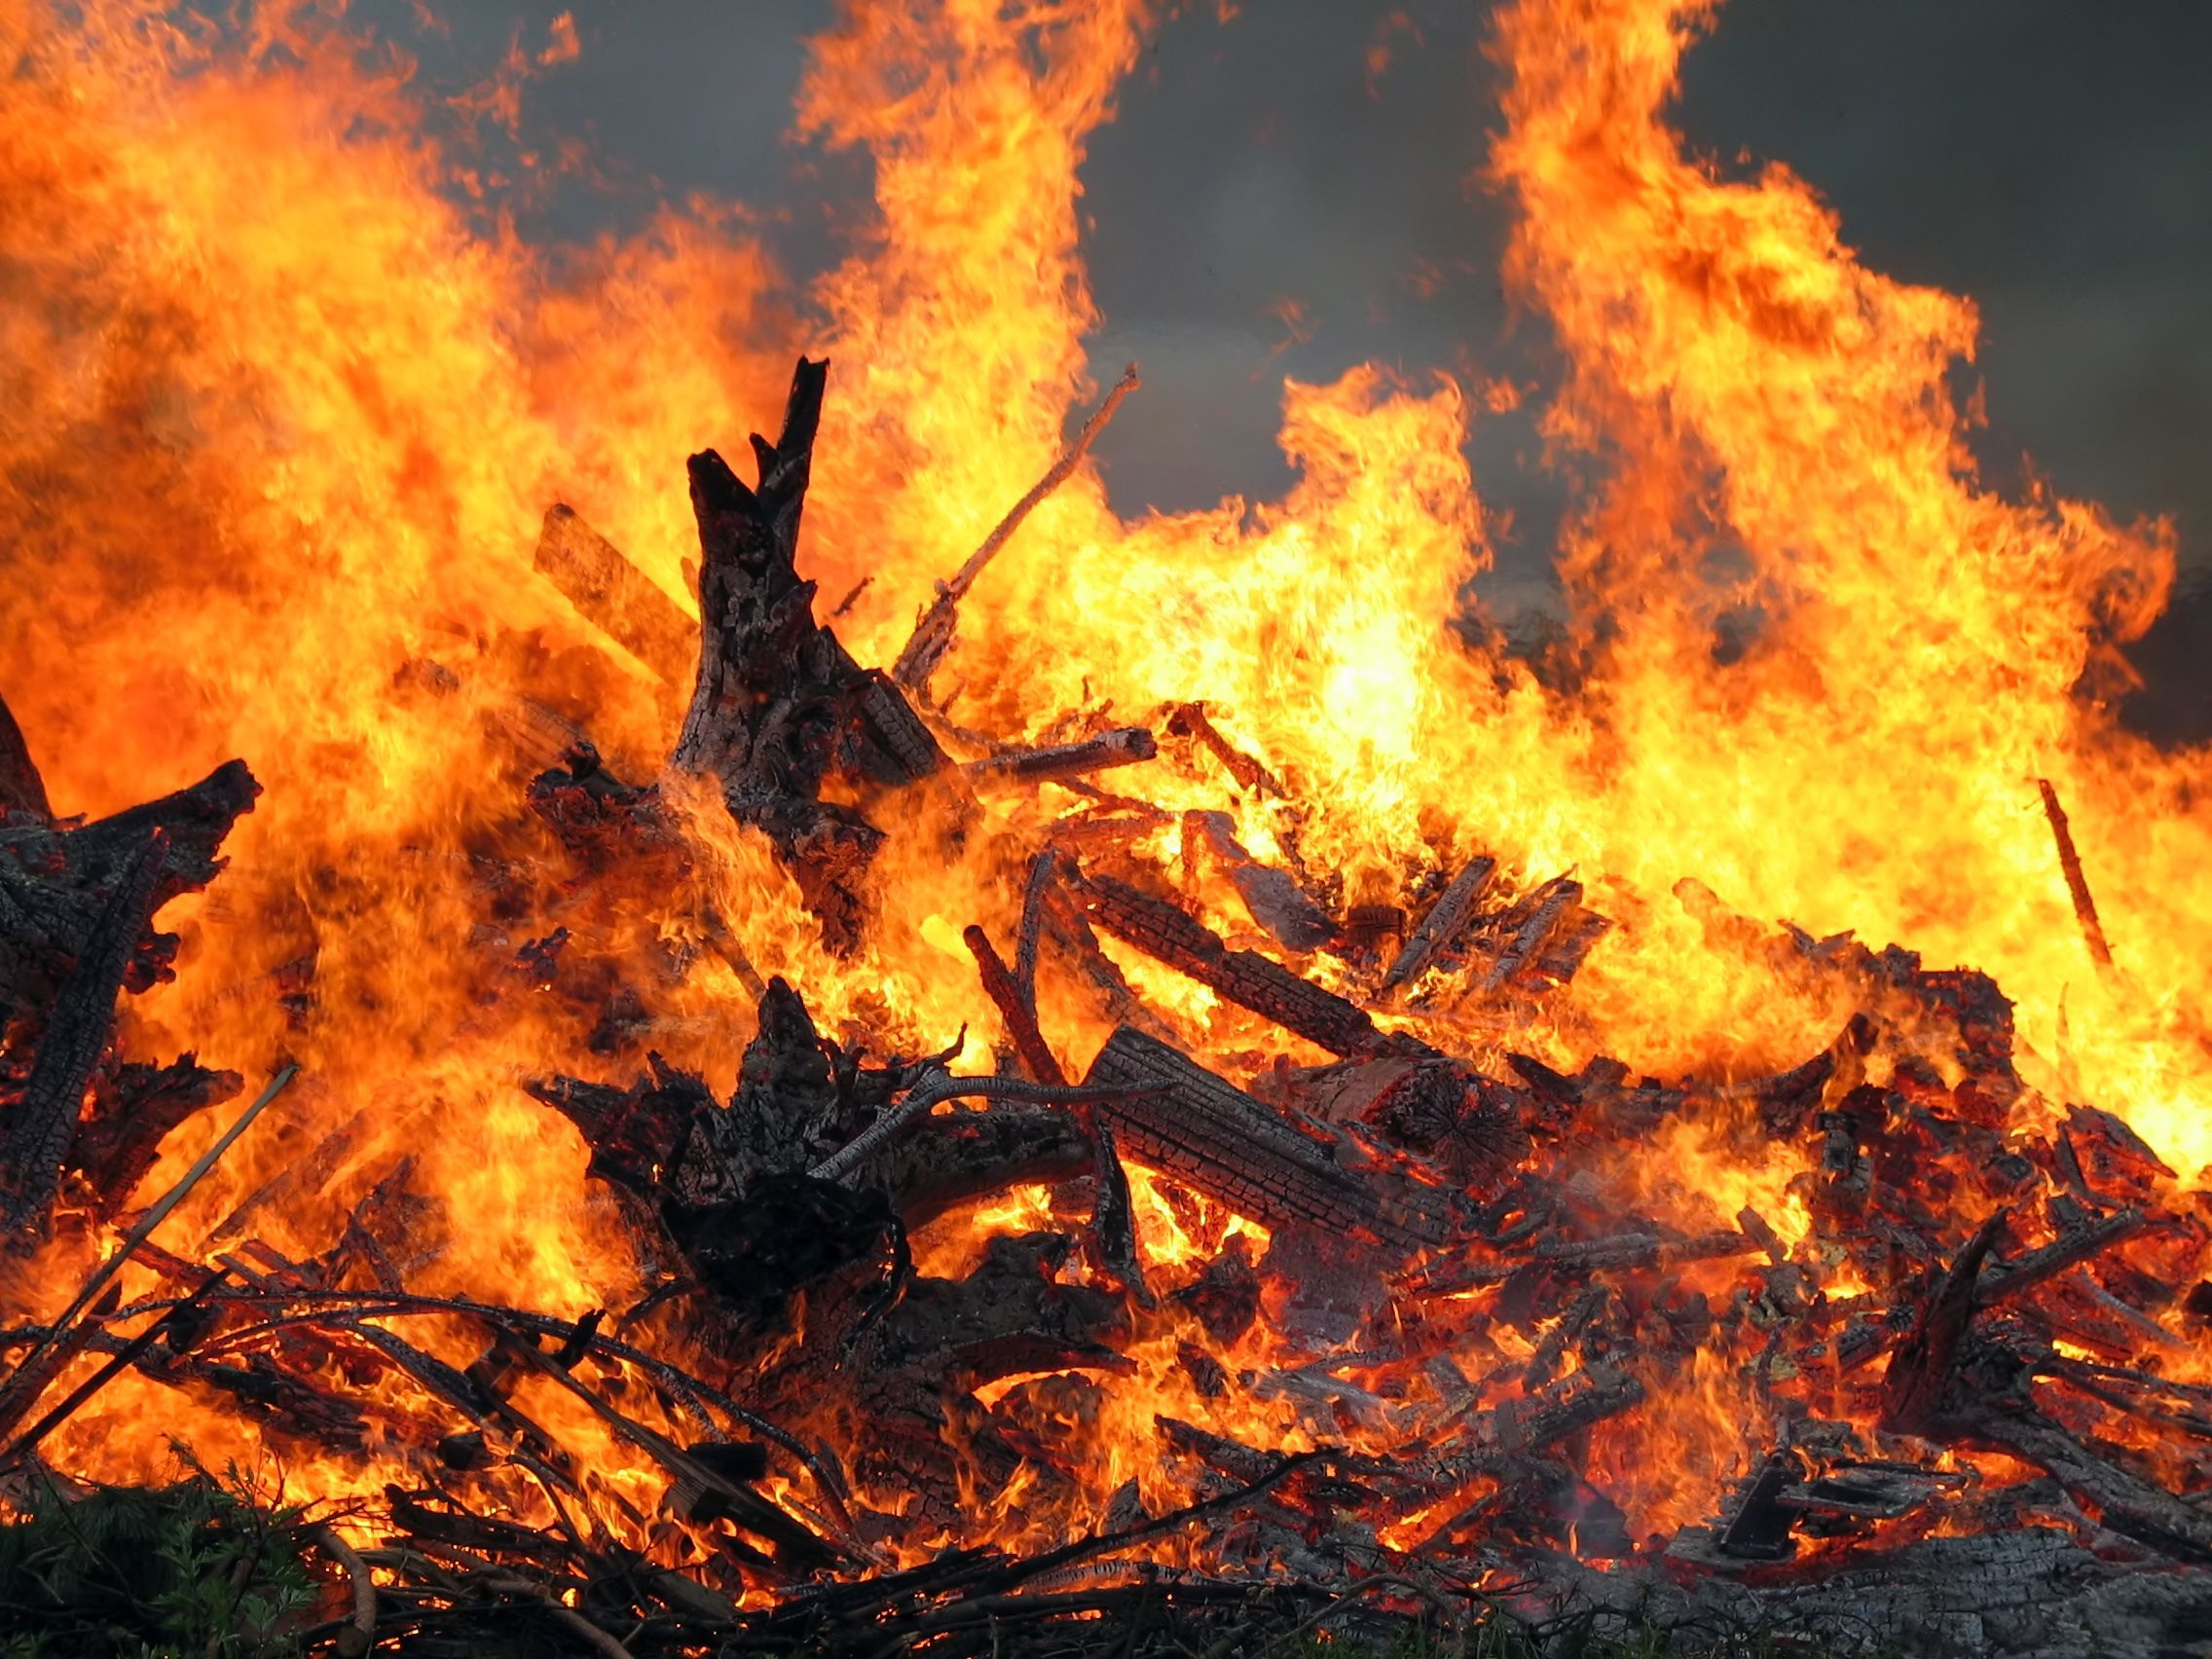 СМИ: В Харькове вспыхнул пожар в доме - видео